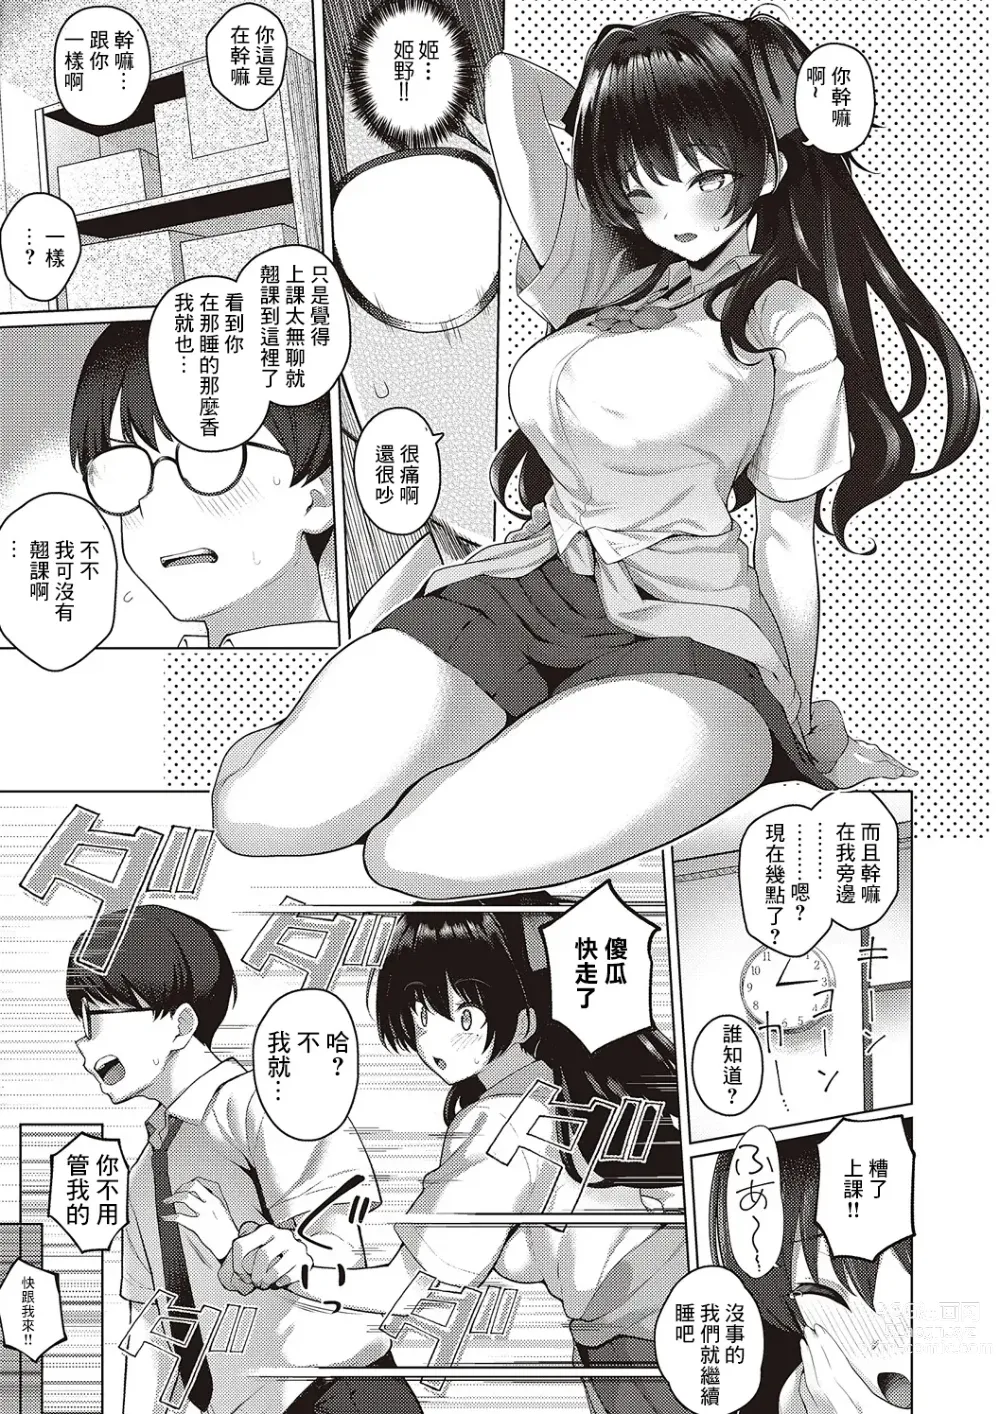 Page 5 of manga Majime to Fumajime